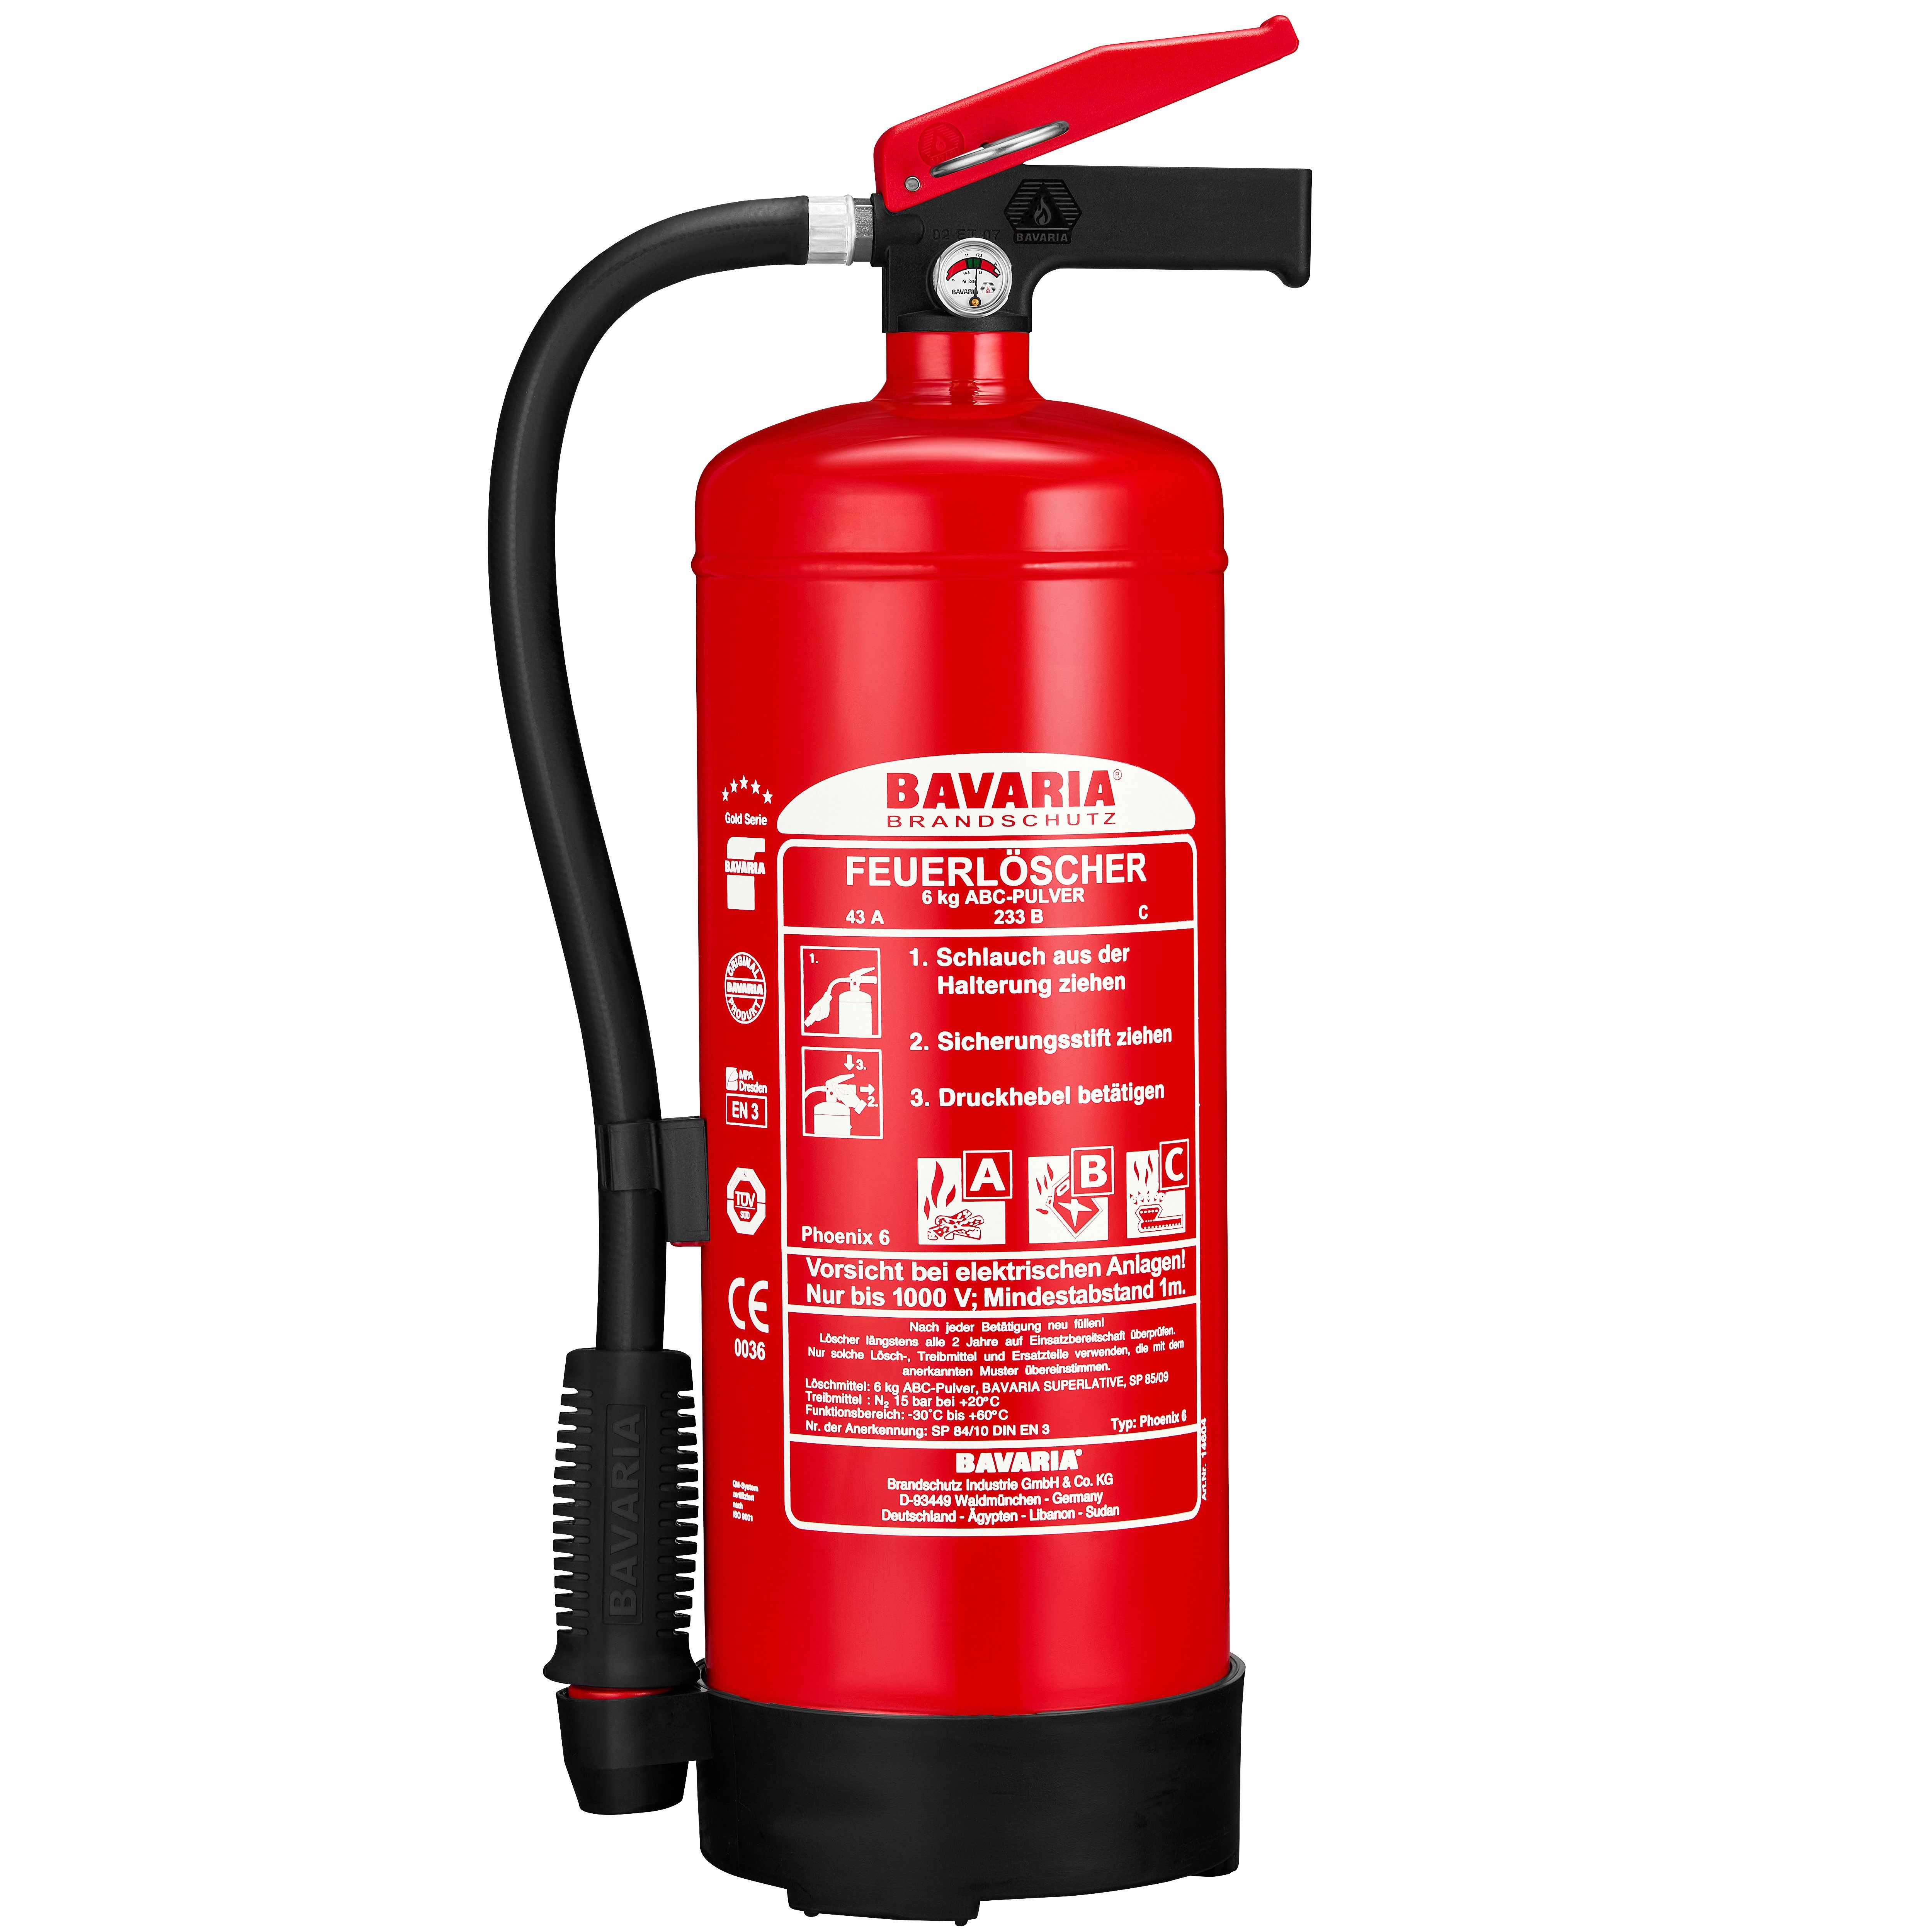 BAVARIA Brandschutz Pulver-Feuerlöscher Phoenix 6, ABC-Pulver, Dauerdrucklöscher mit hoher Leistung